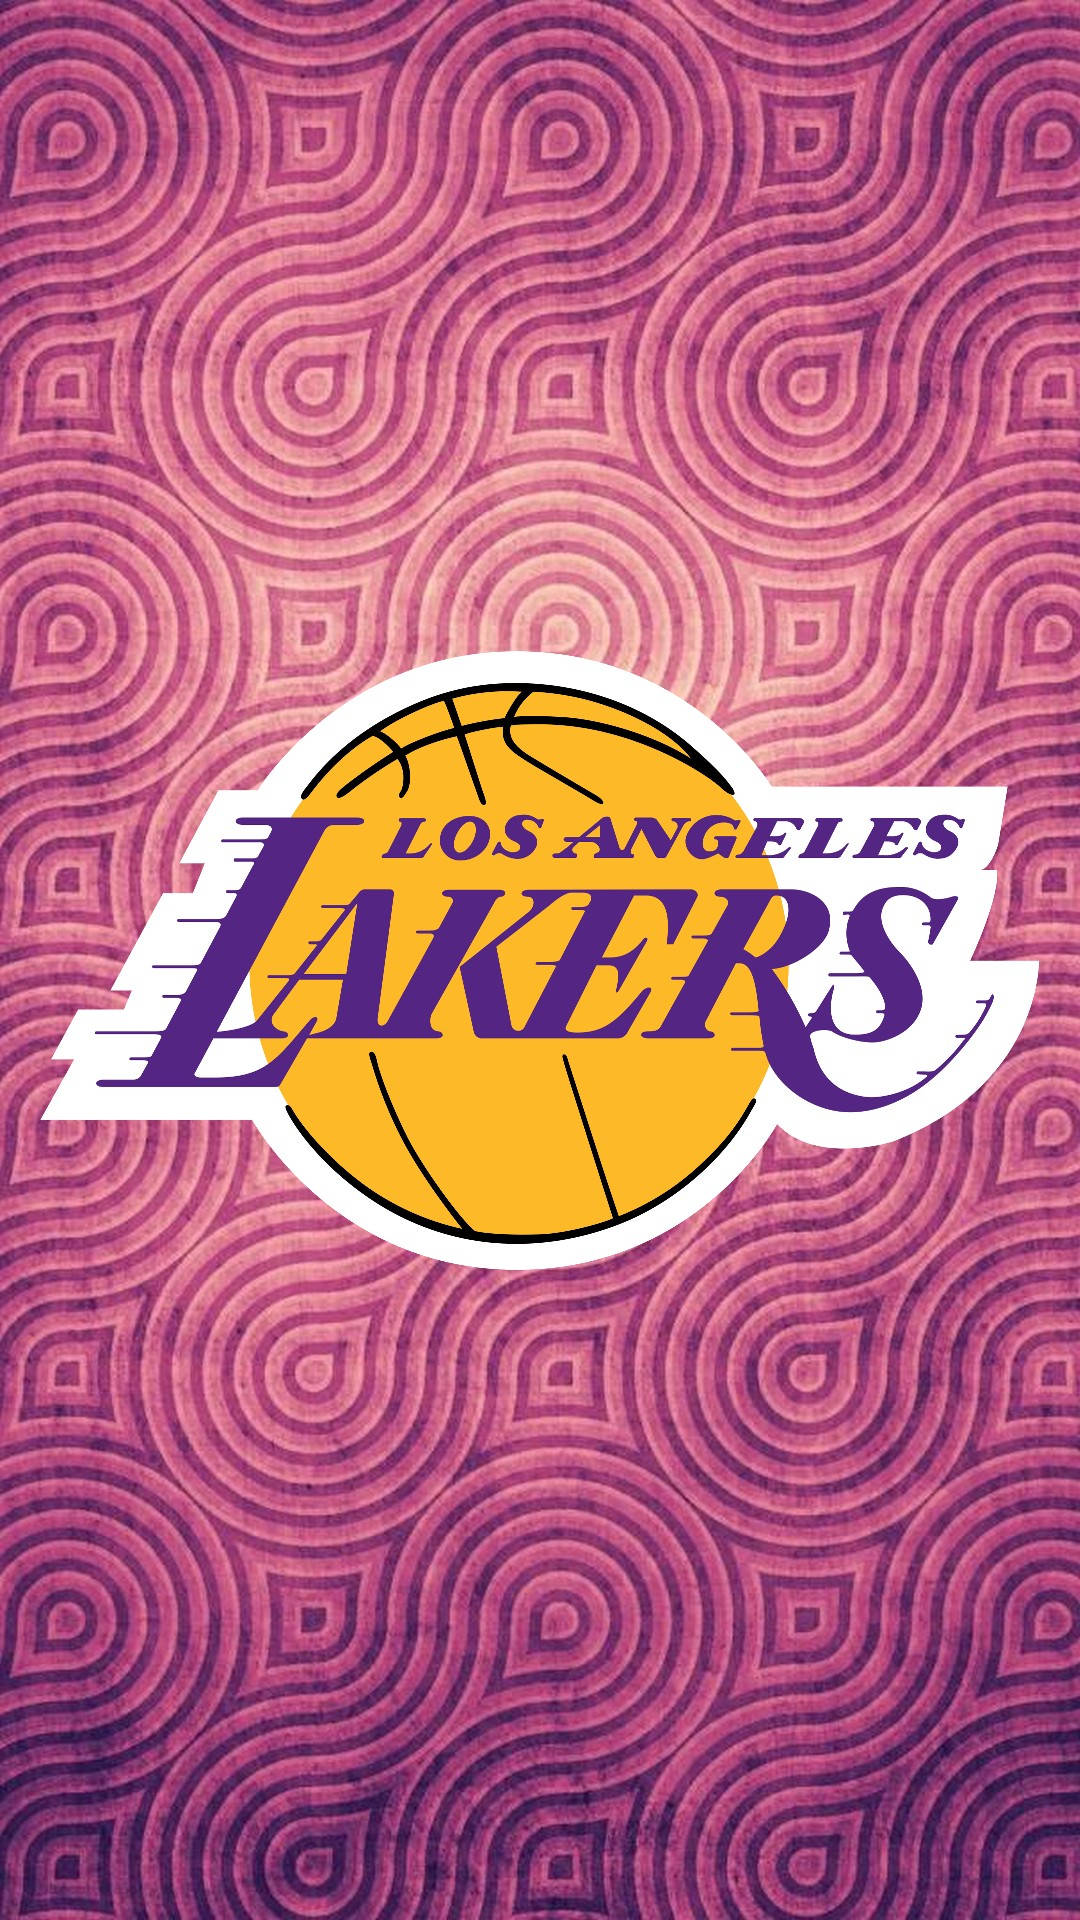 Lakers Iphone 1080 X 1920 Wallpaper